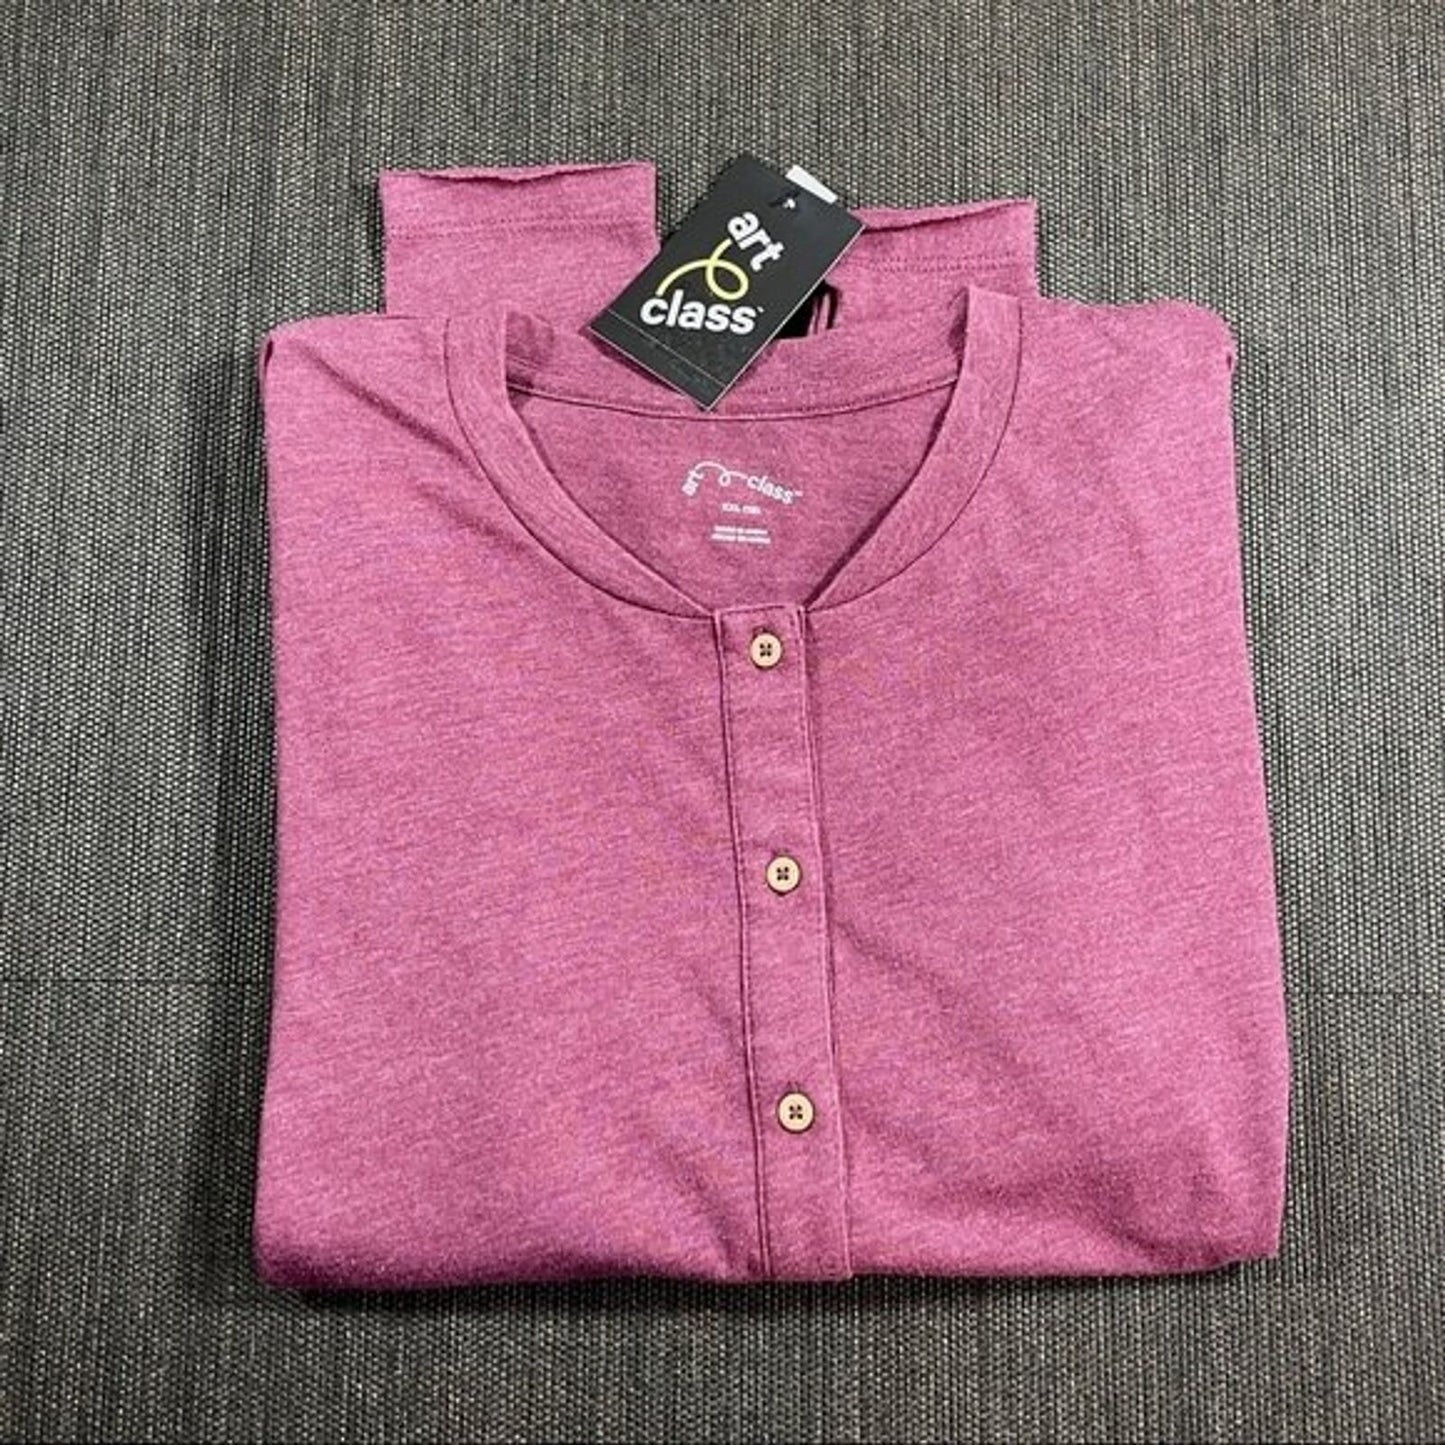 Girls Rose Pink Henley Shirt Cotton Boho Long-Sleeve T-Shirt XXL